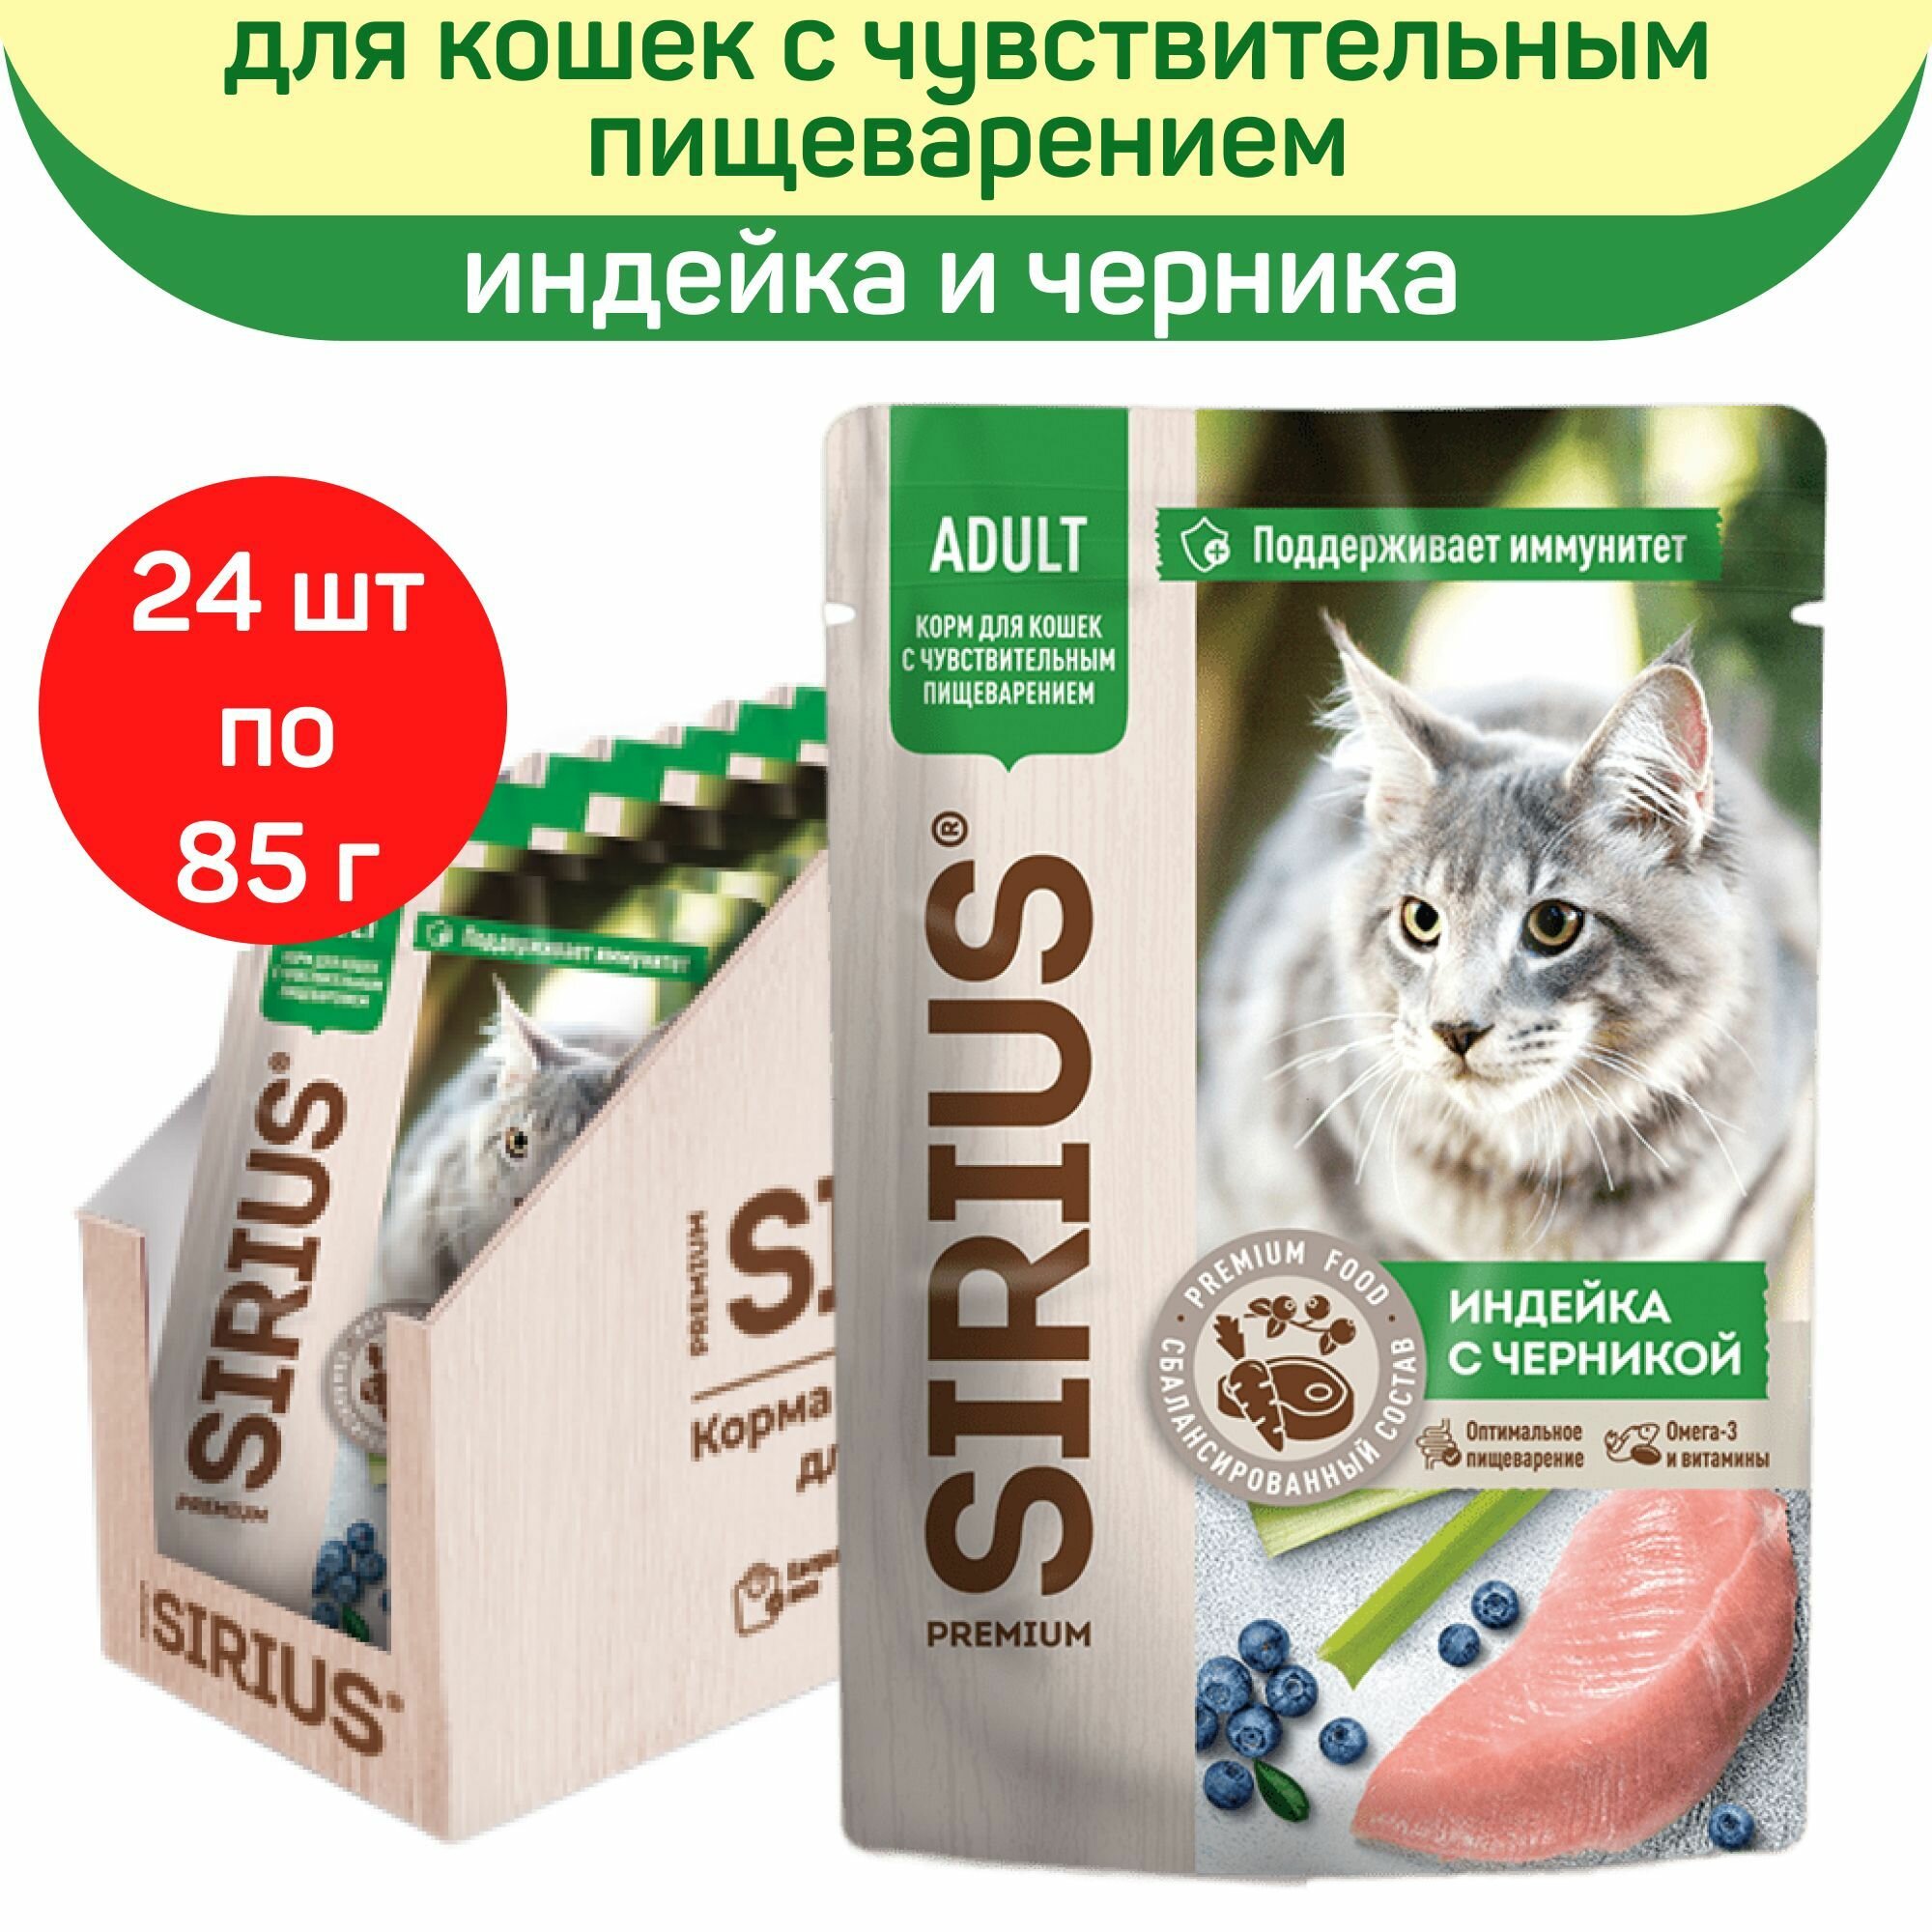 Влажный корм для кошек SIRIUS, индейка с черникой, 24 шт по 85 г